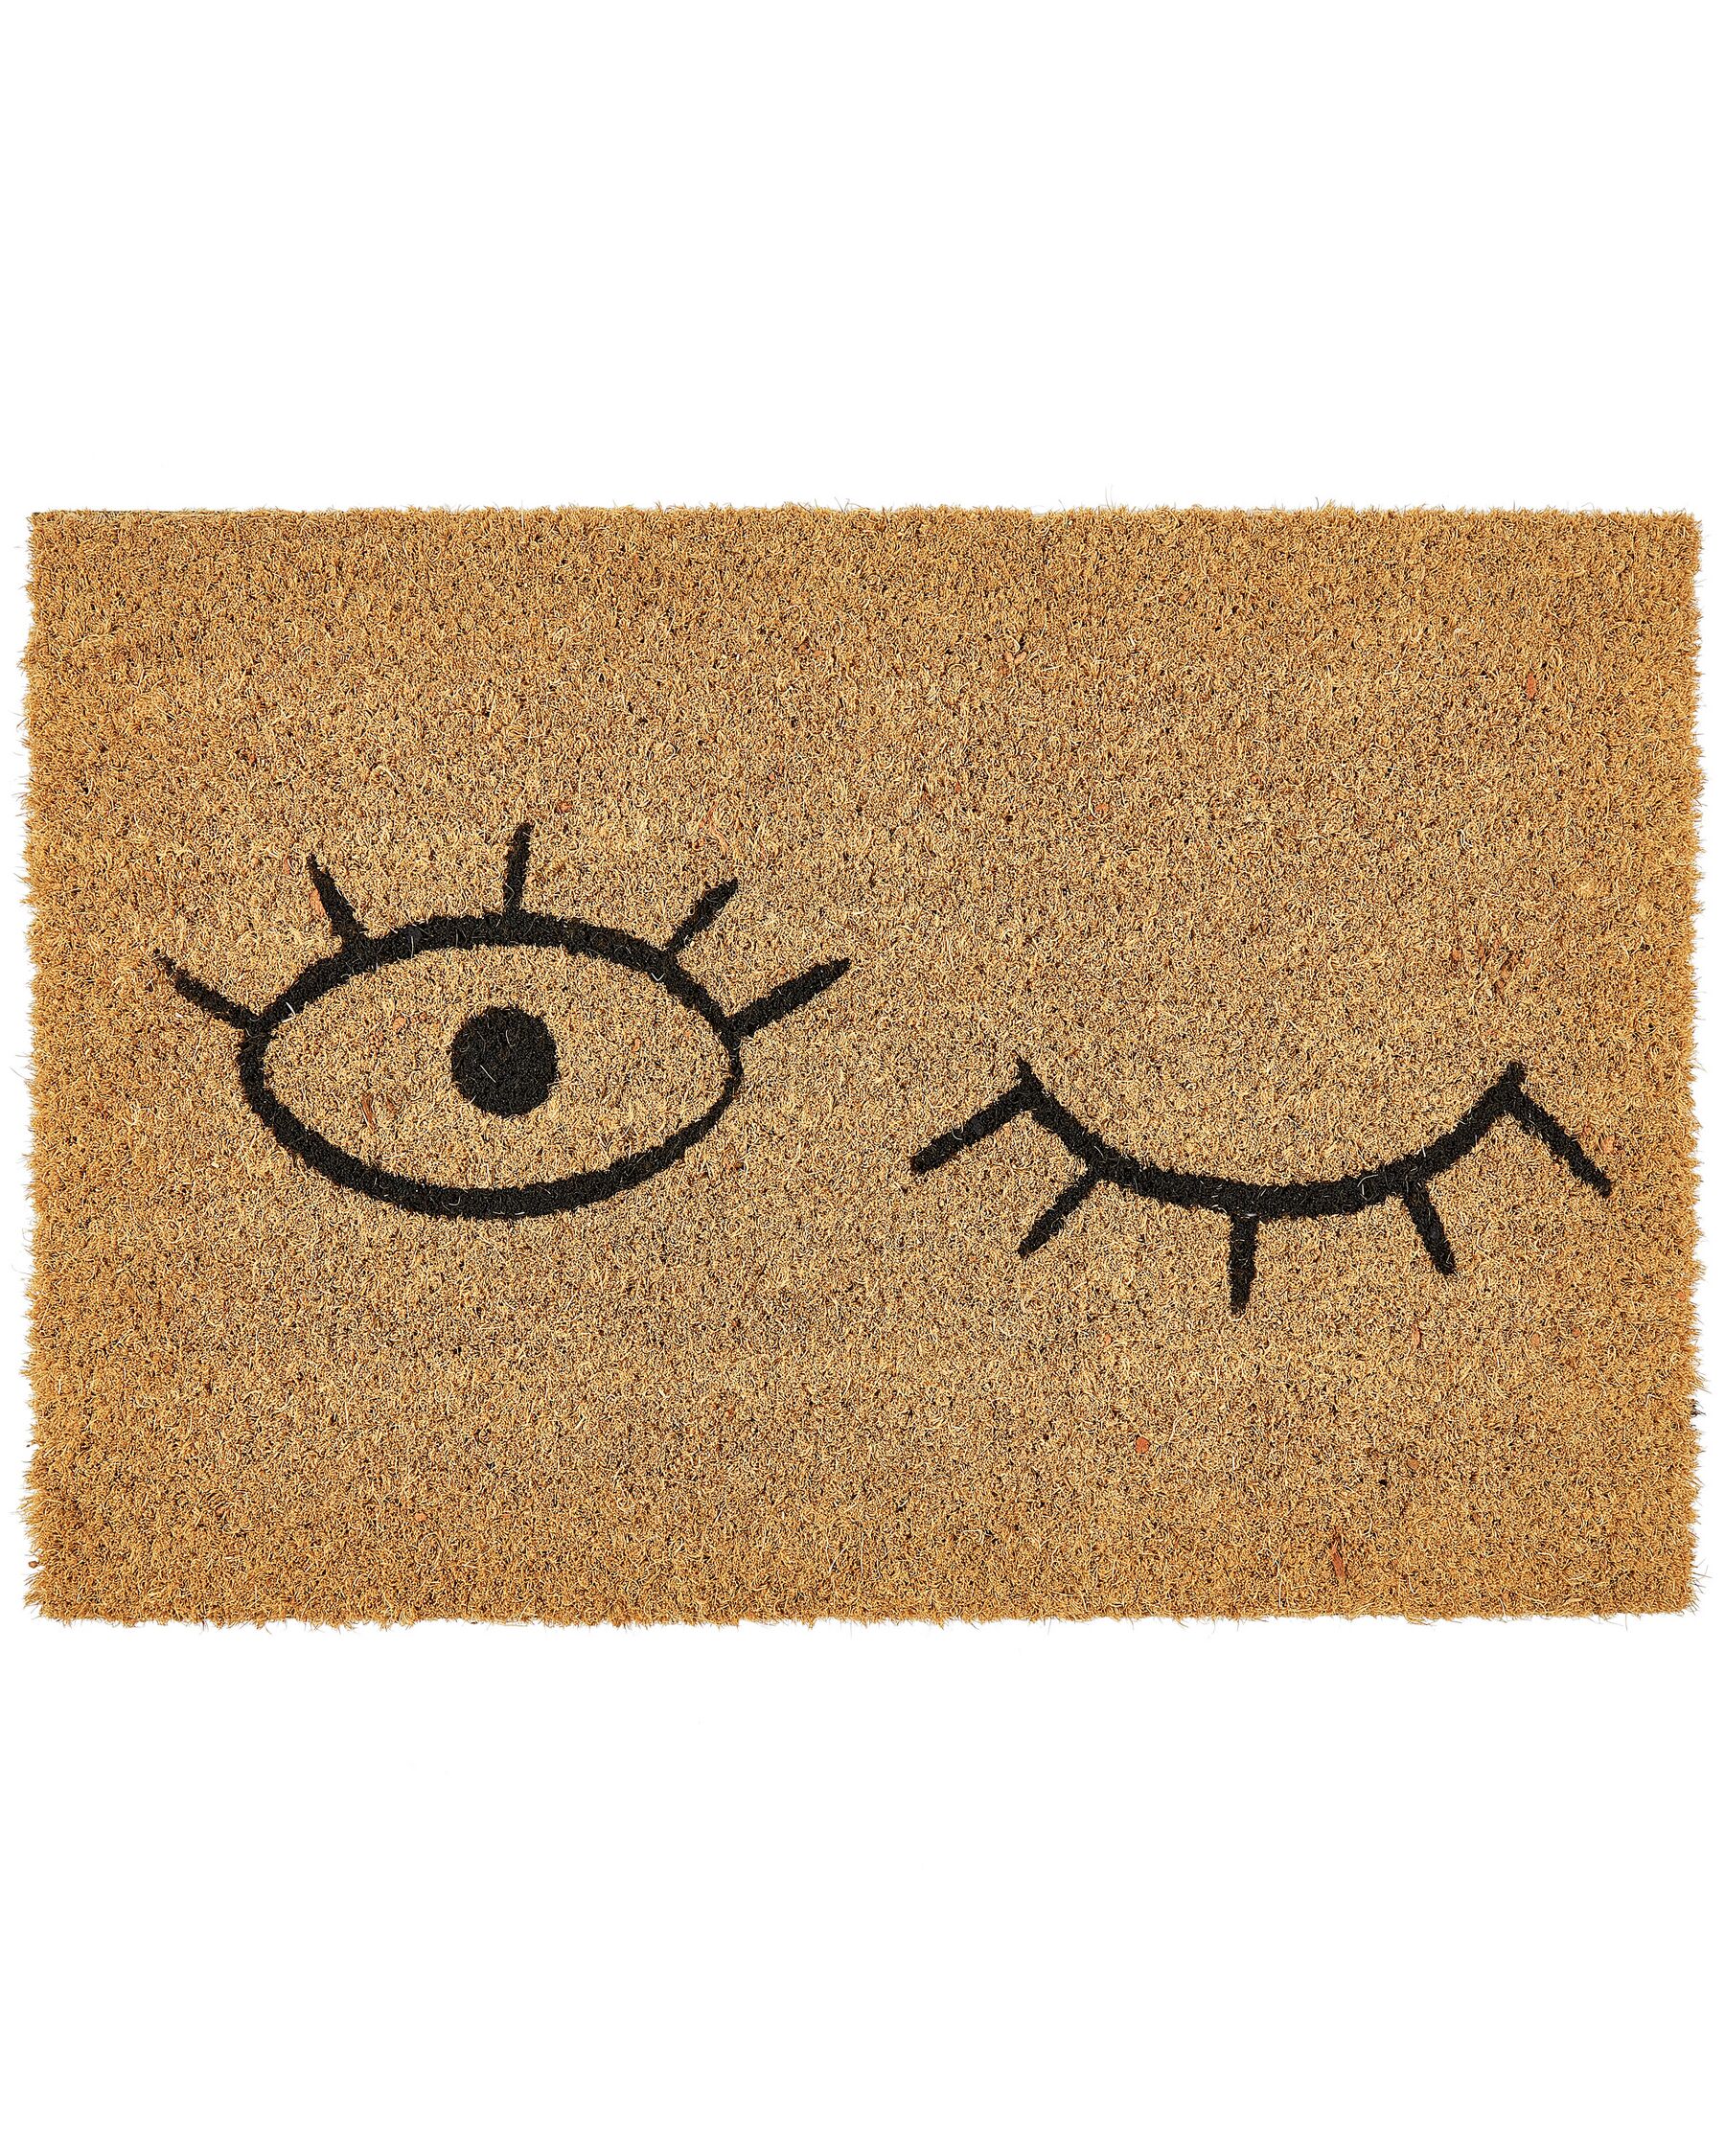 Paillasson avec motif yeux 40 x 60 cm en fibre de coco naturel TAPULAO_905618